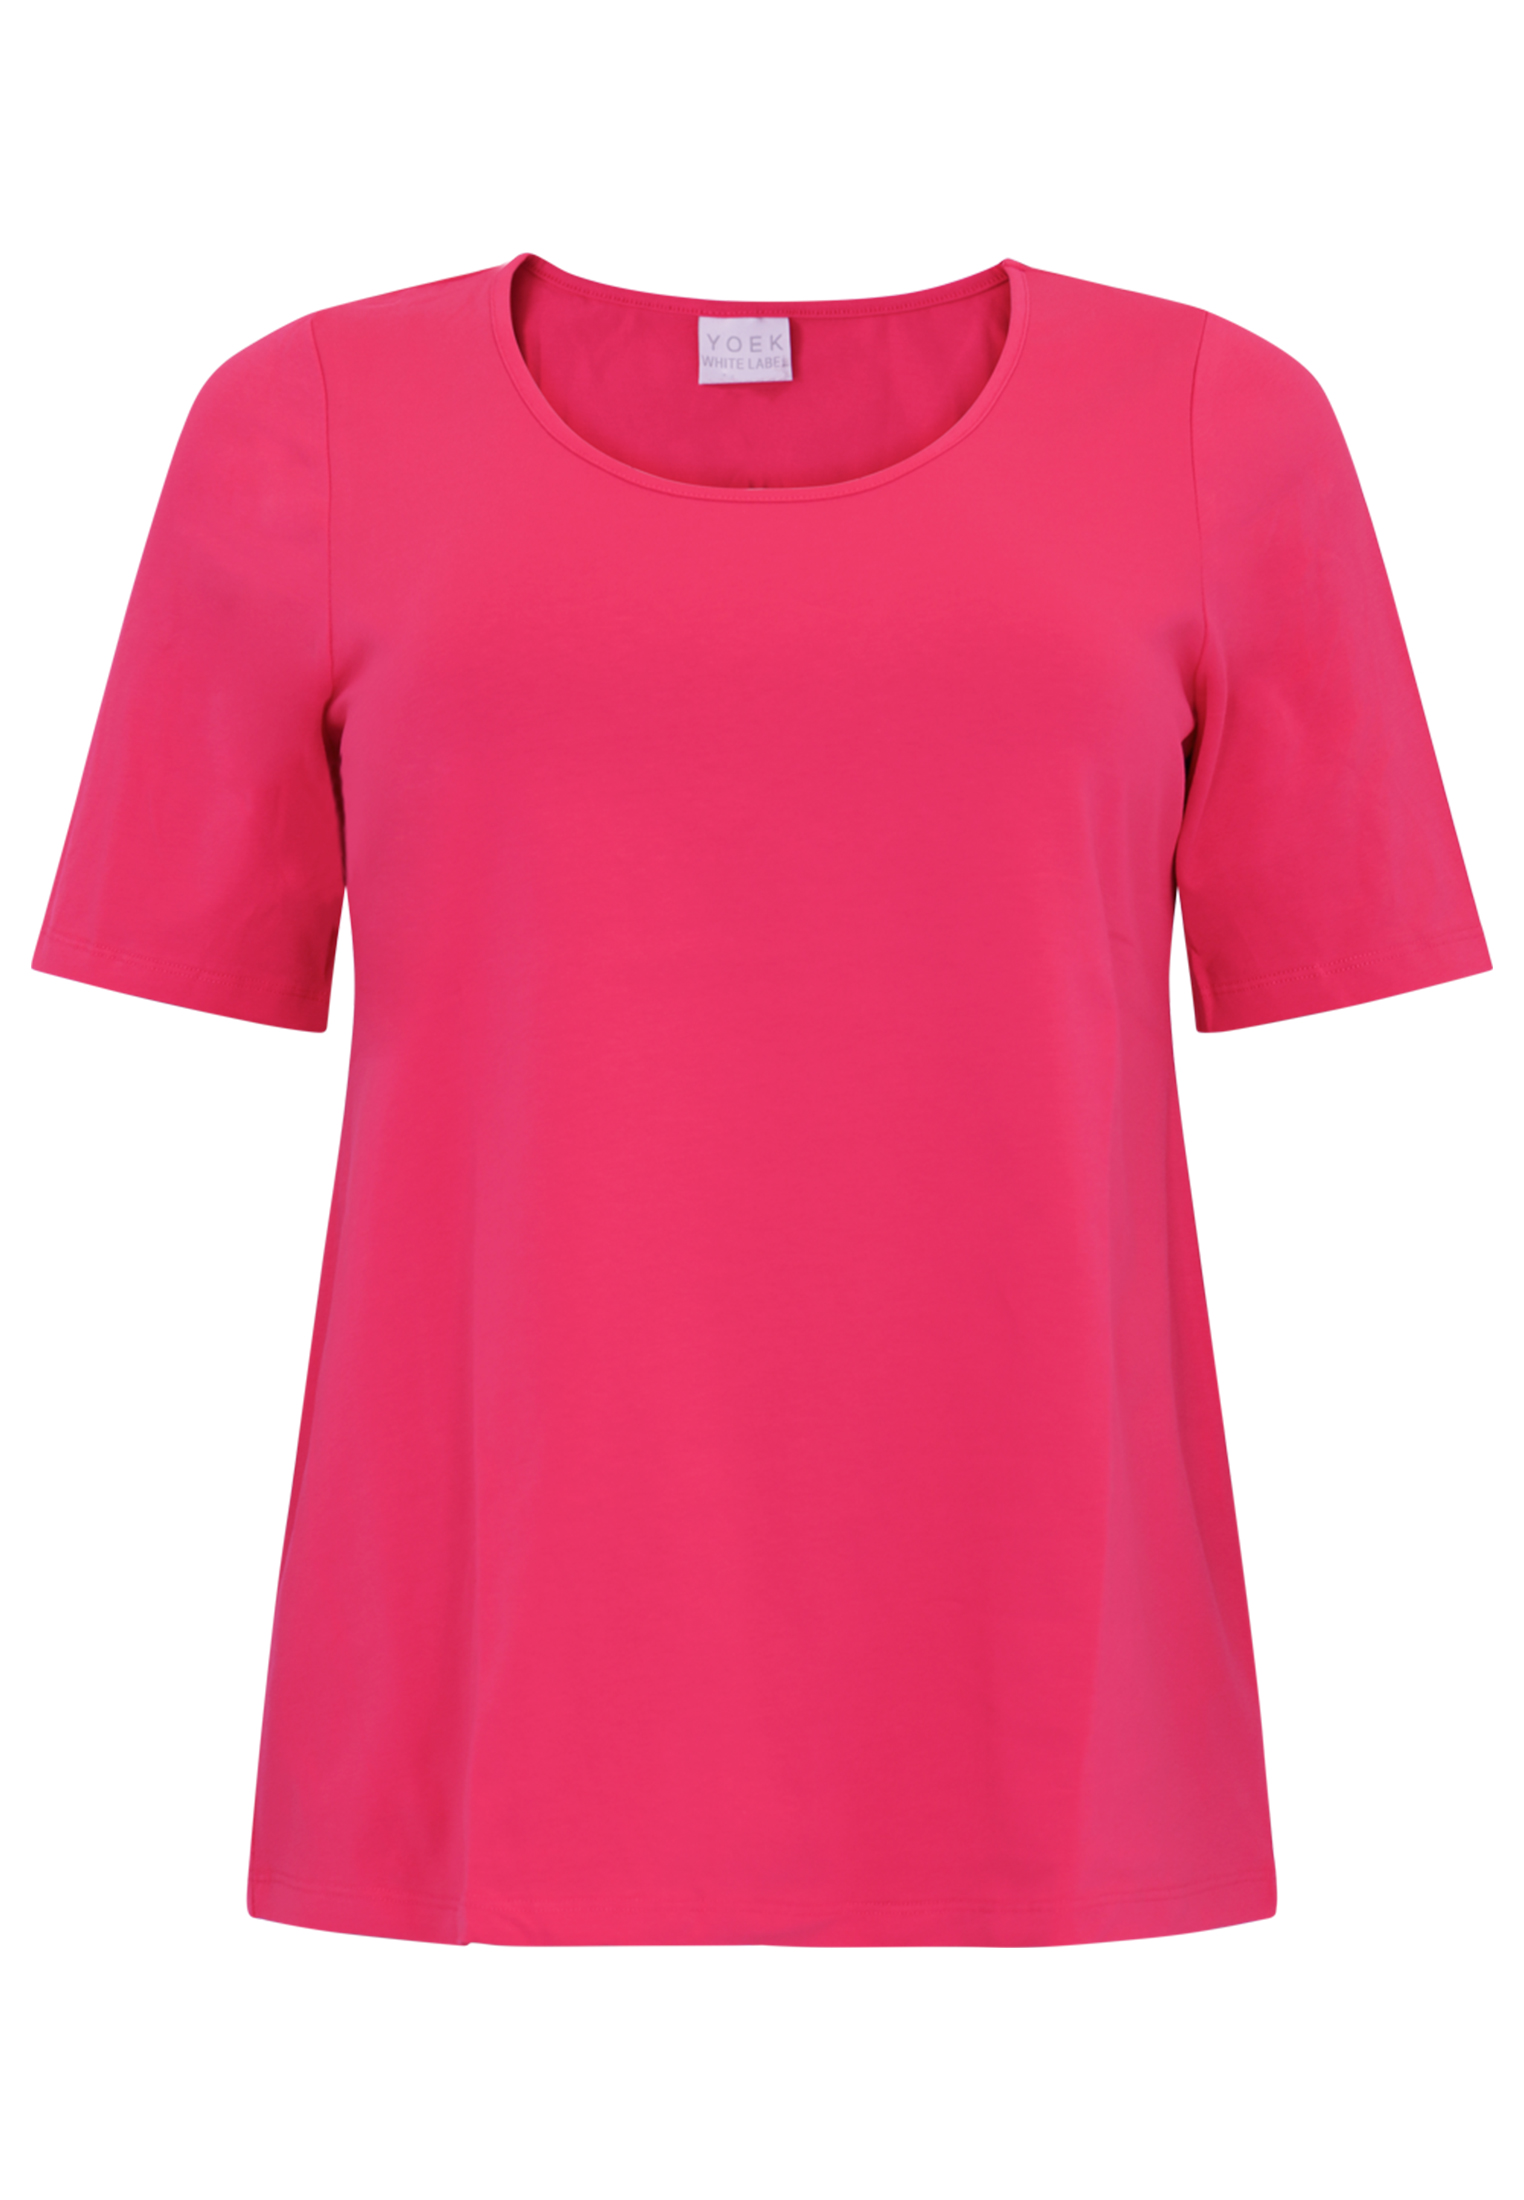 Basic T-shirt ORGANIC COTTON 54/56 pink